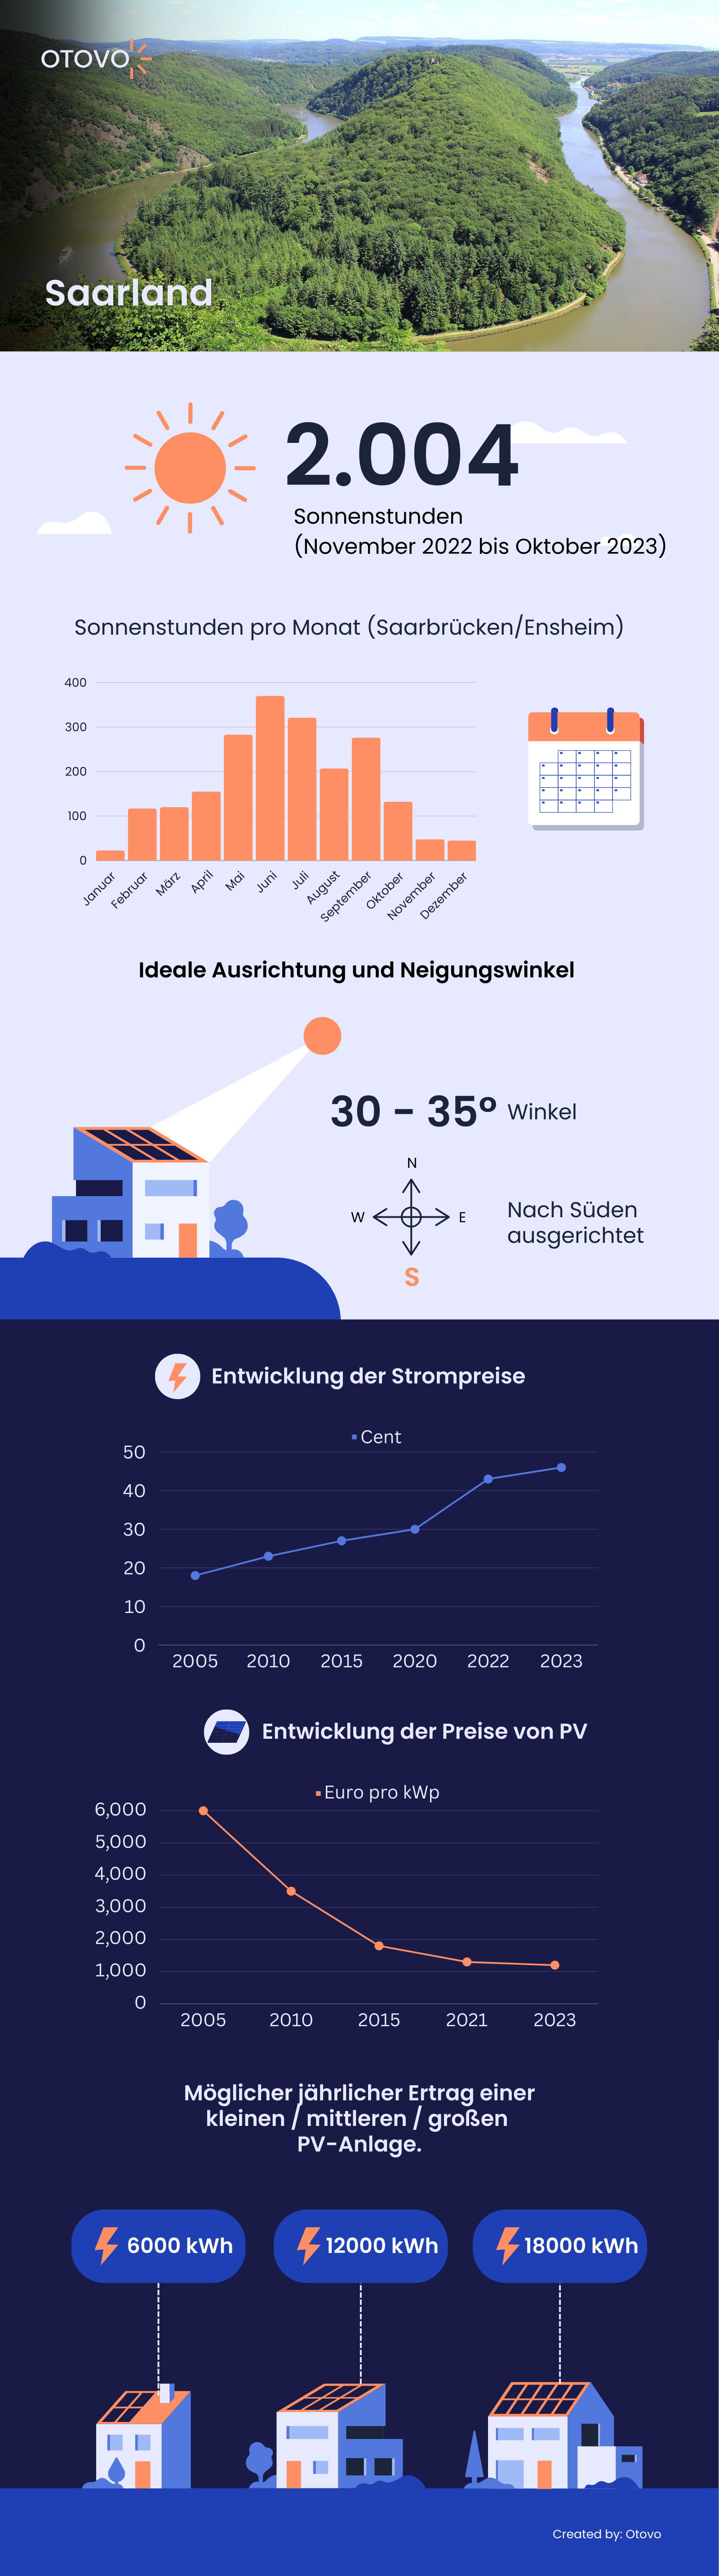 Infografik zu Solaranlagen im Saarland